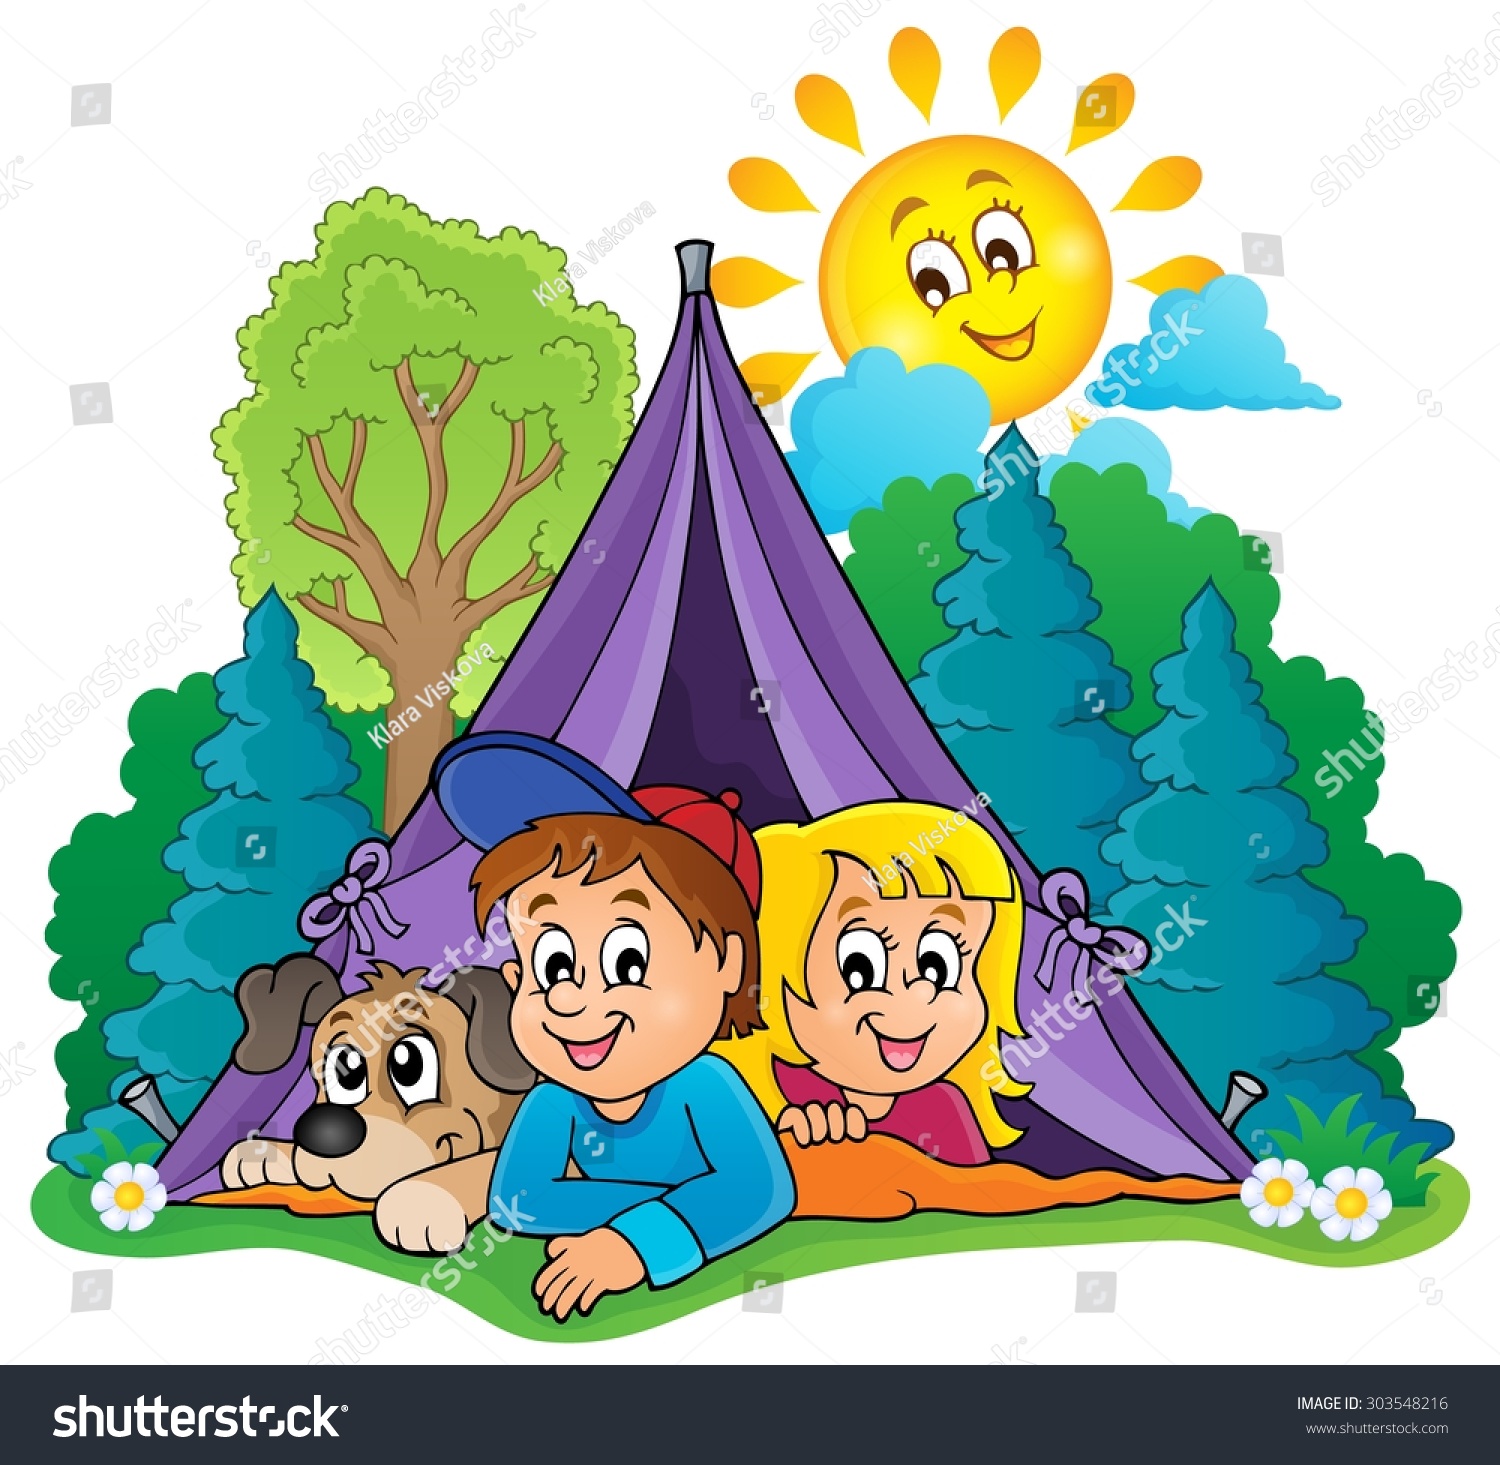 Палаточный лагерь для детей